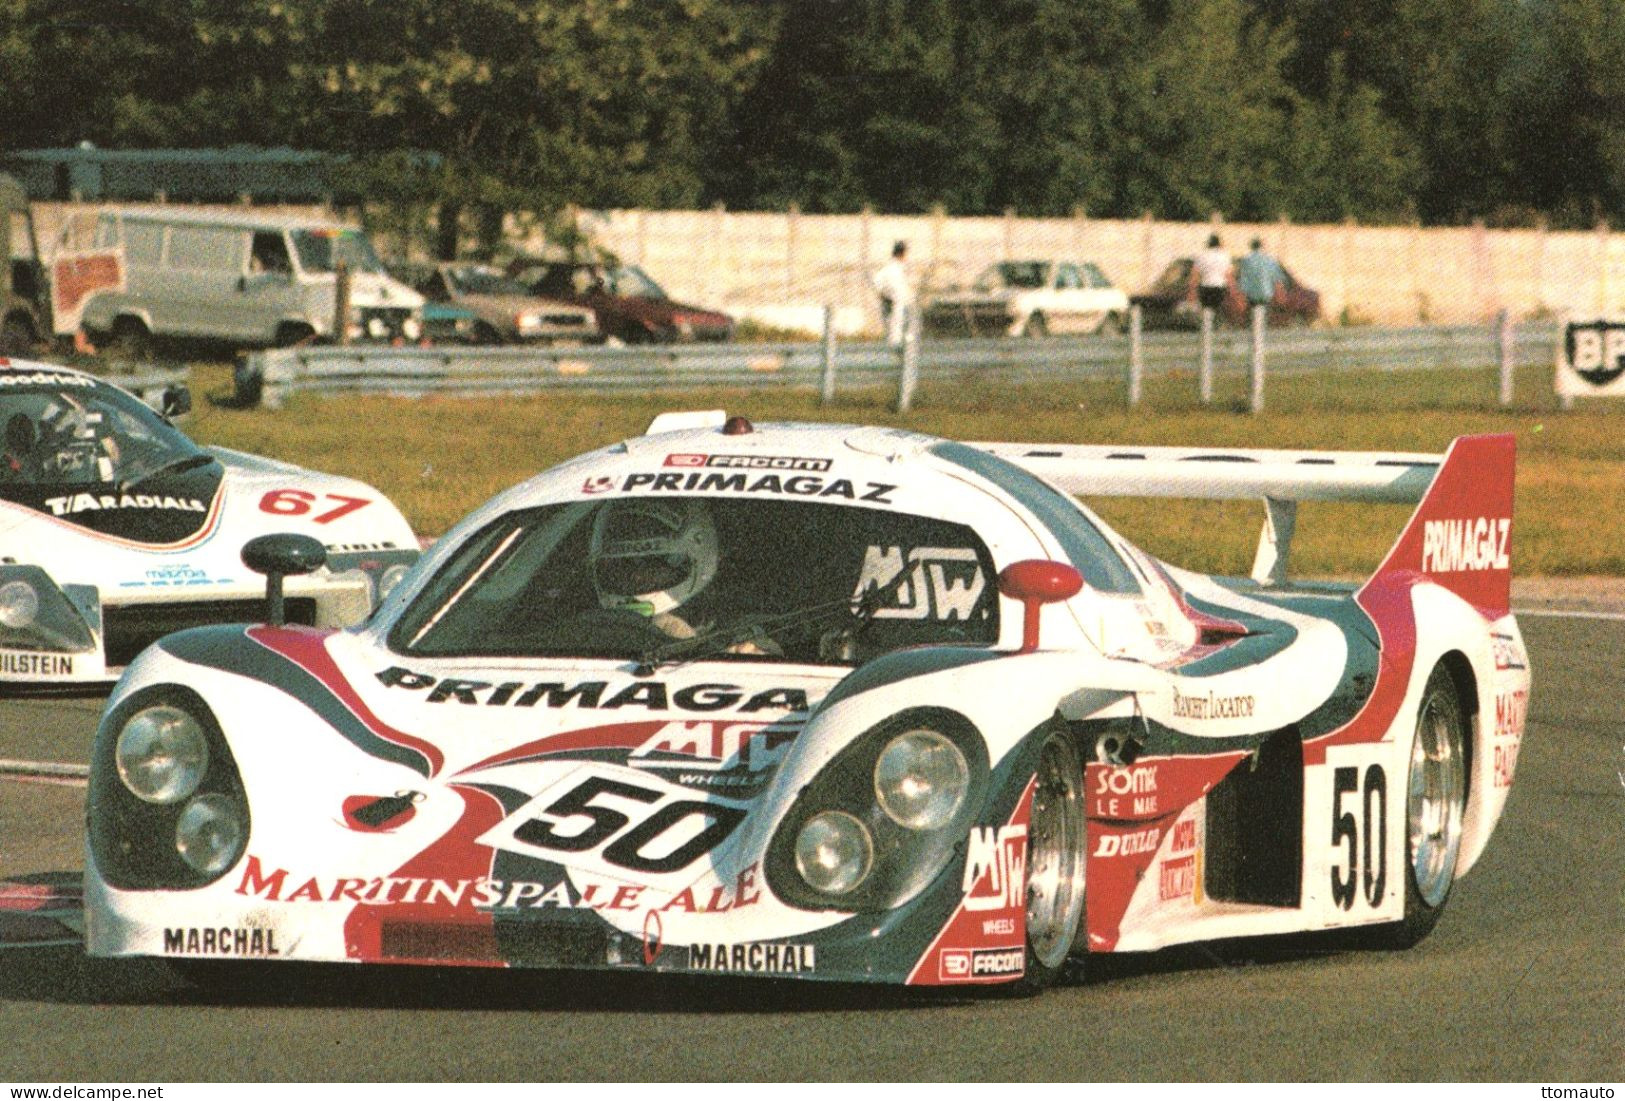 Rondeau MS382  - Pilote: Pierre Yver  (Concurrent Francaise Du Mans 1984) - PHOTO 15x10cms - Le Mans